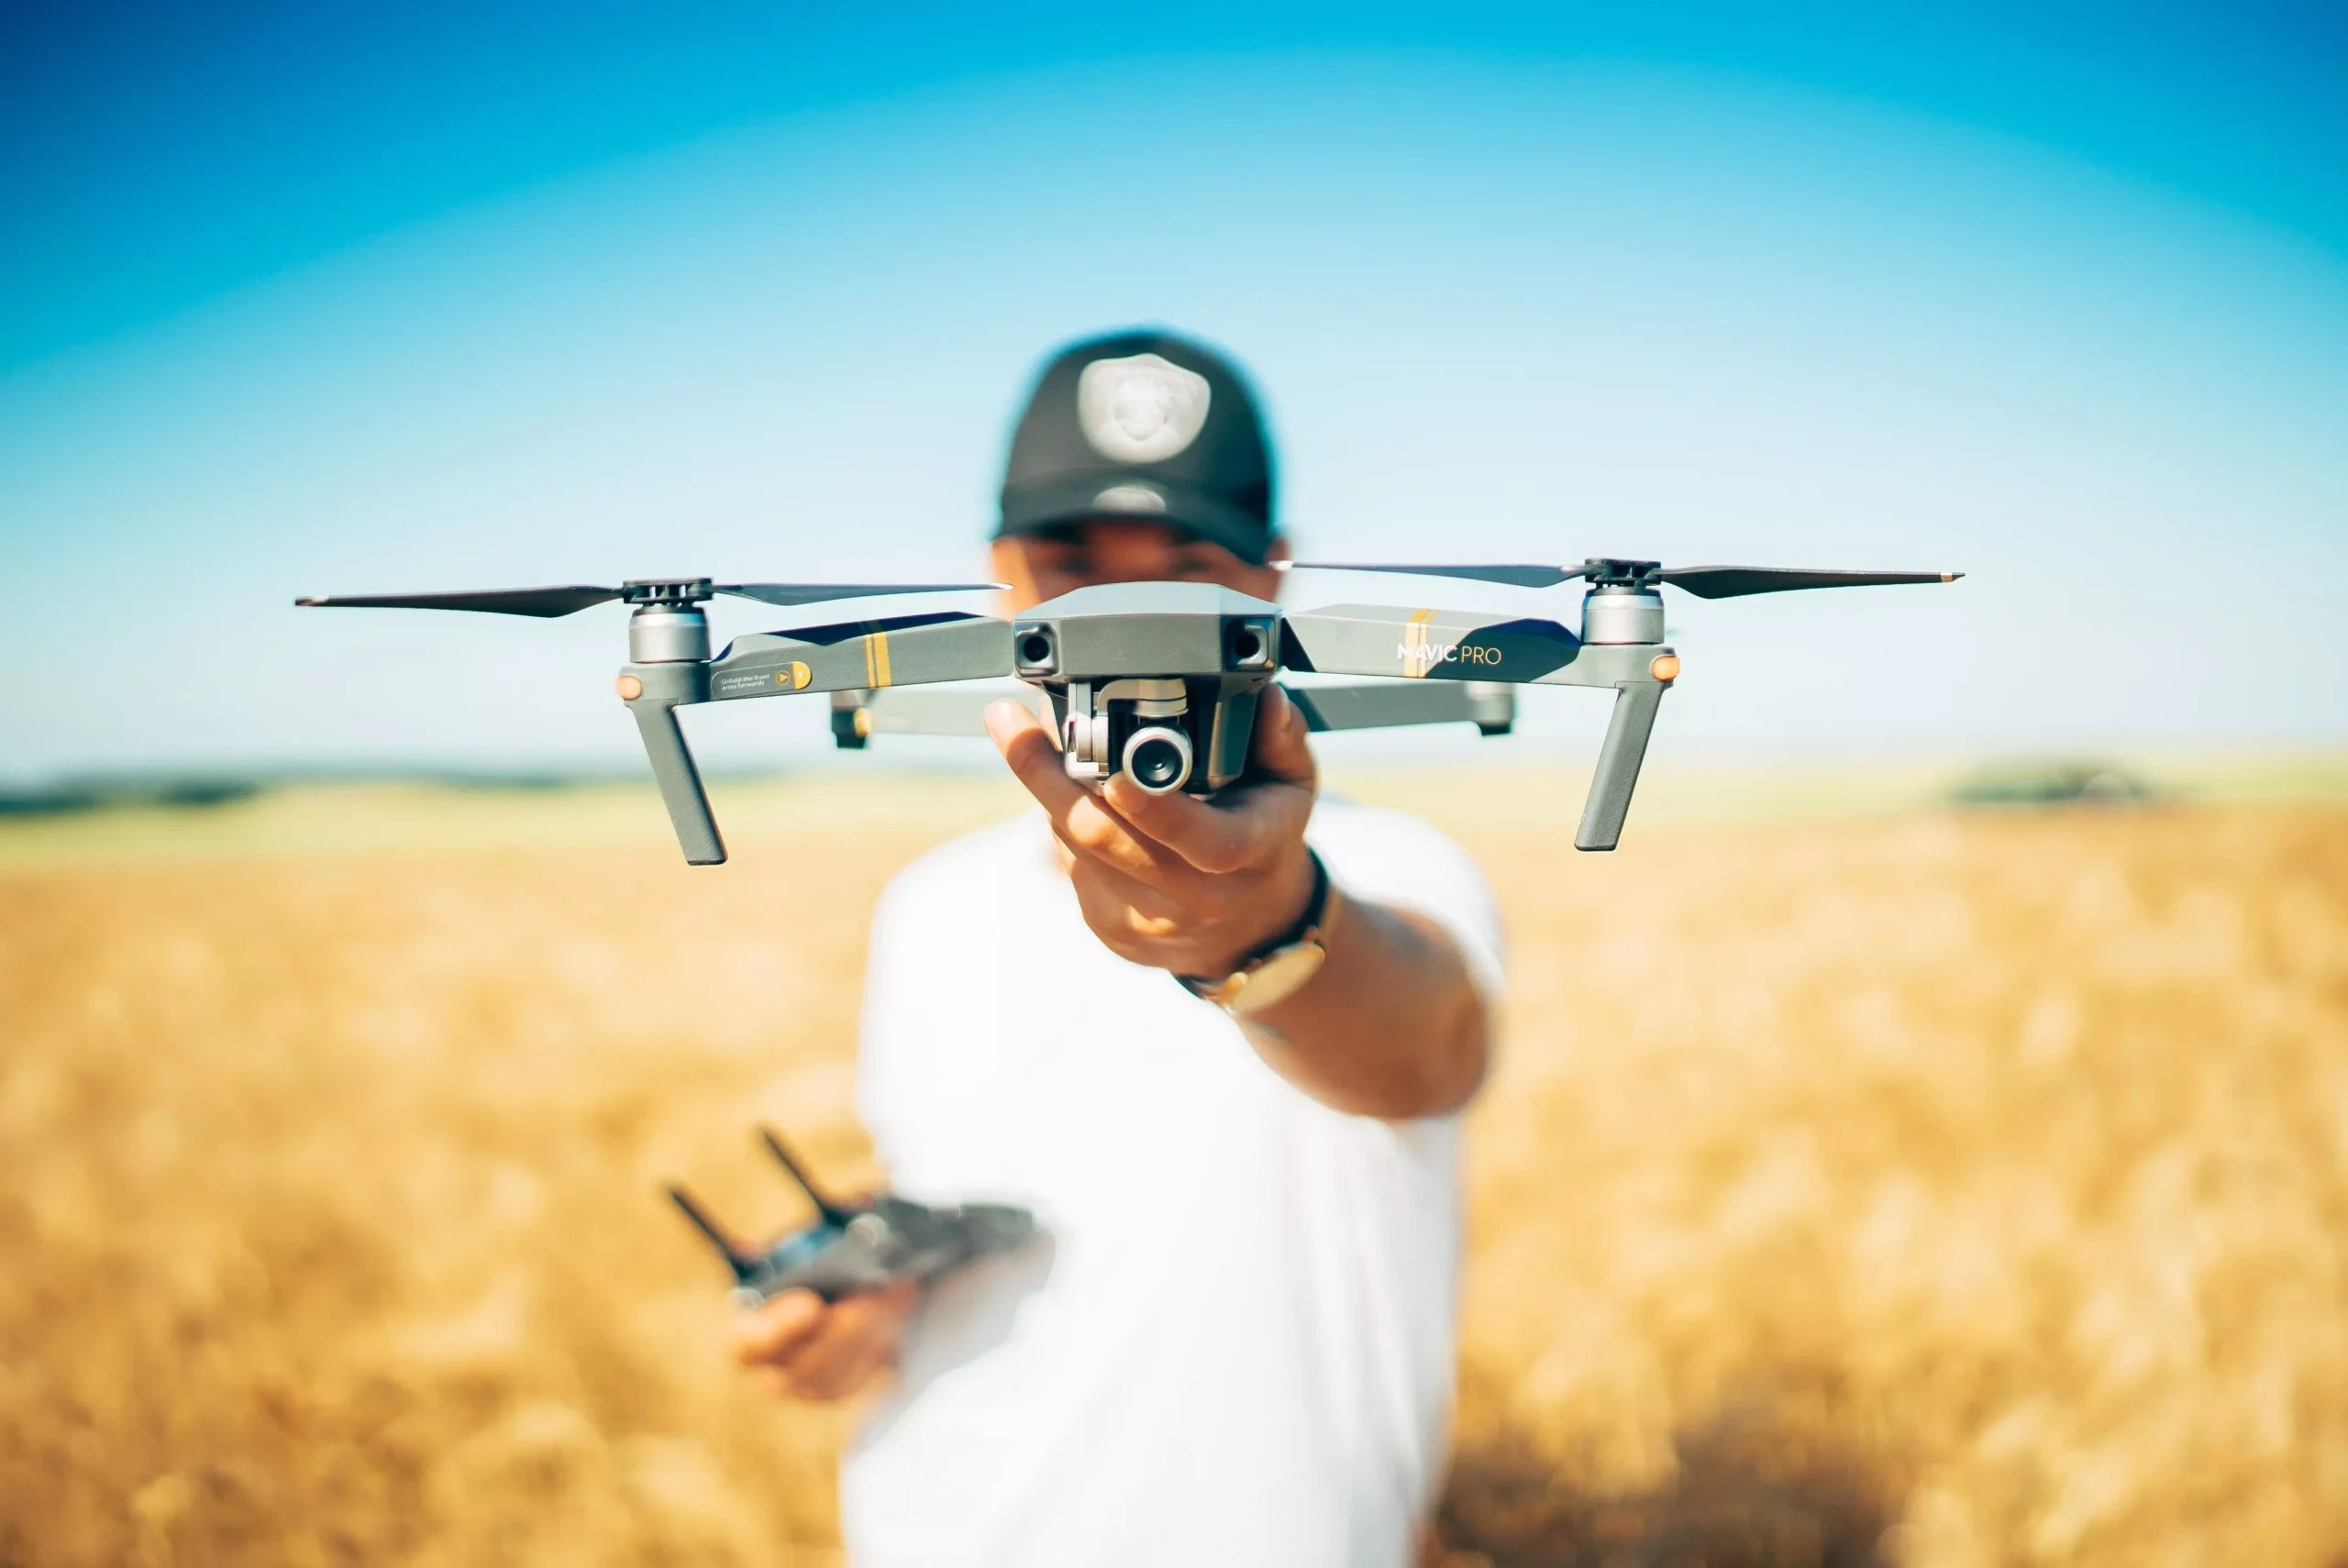 Saiba Como Obter Autorizacao para Usar Drones nos Parques Capixabas scaled